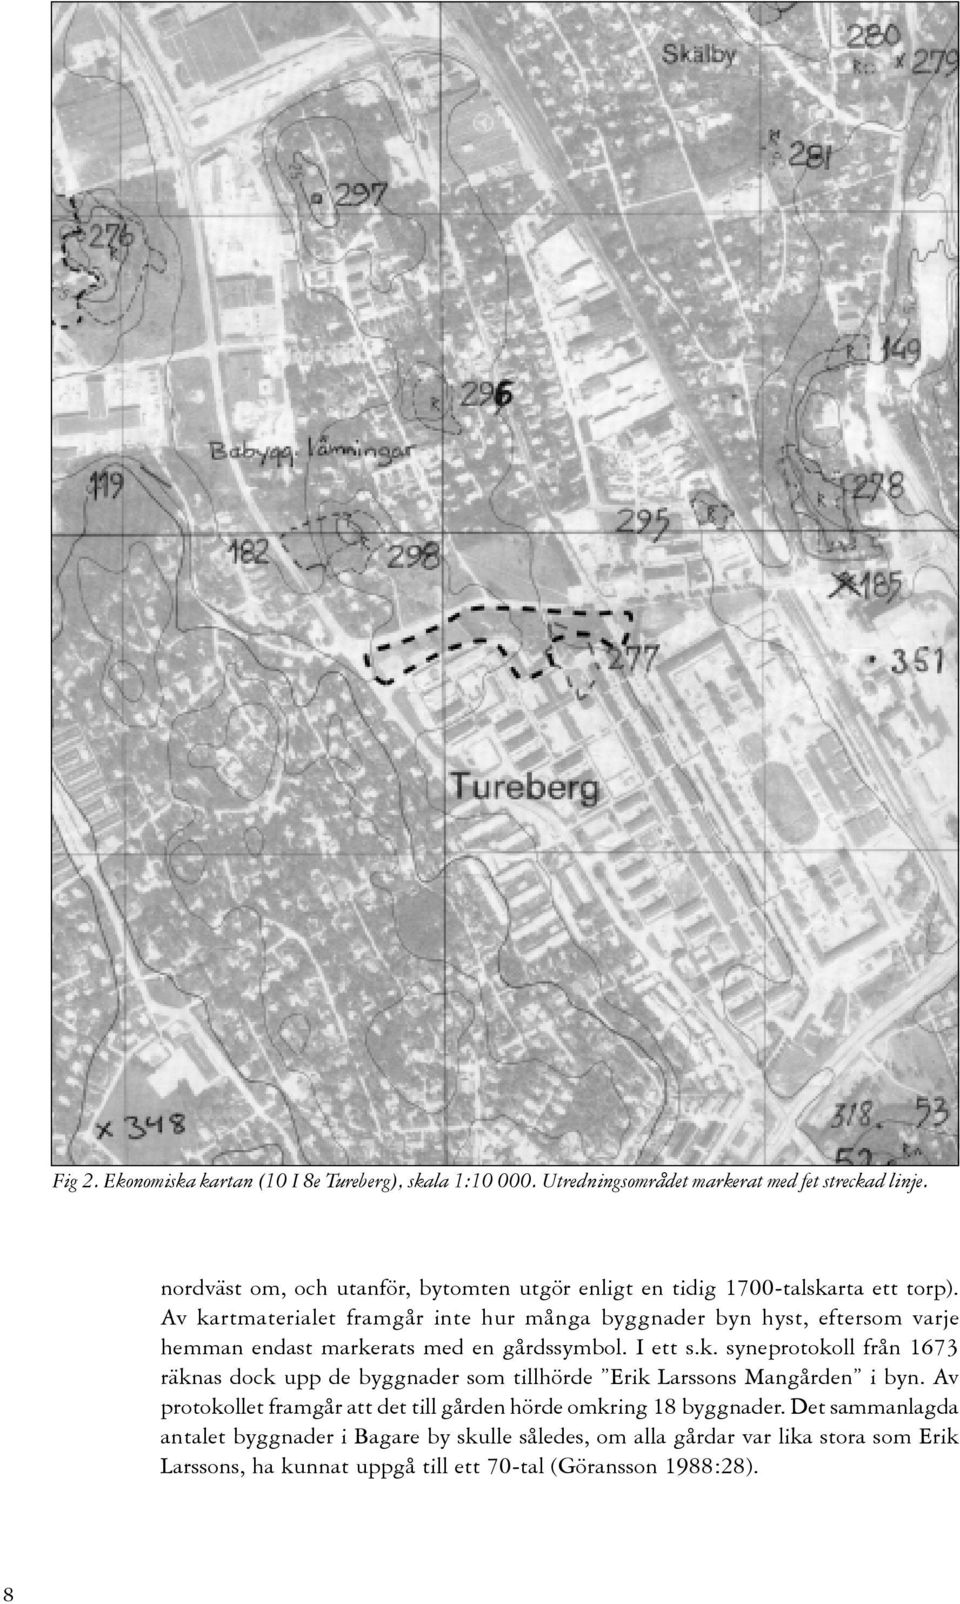 Av kartmaterialet framgår inte hur många byggnader byn hyst, eftersom varje hemman endast markerats med en gårdssymbol. I ett s.k. syneprotokoll från 1673 räknas dock upp de byggnader som tillhörde Erik Larssons Mangården i byn.